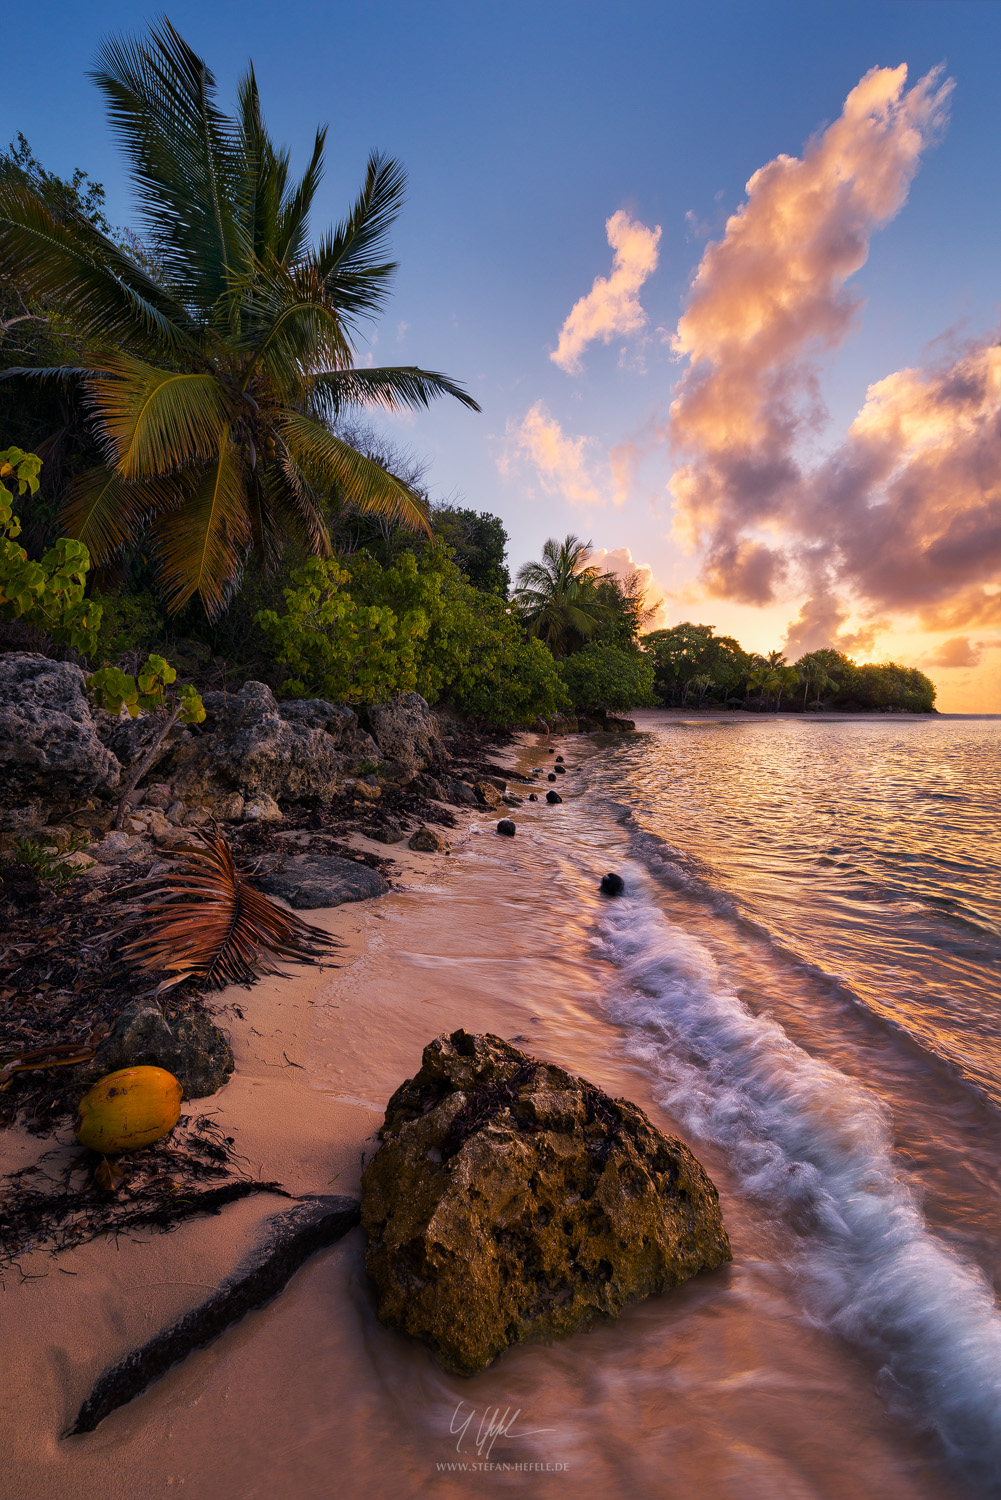 Landschaftsbilder Karibik - Inseln - Landschaftsfotografie